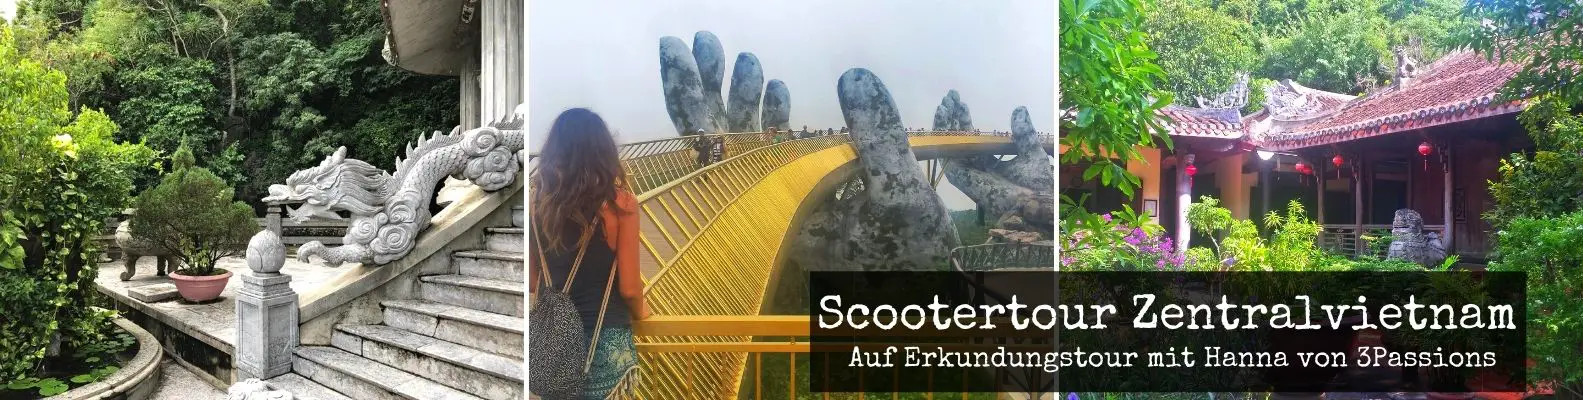 Roller Tour Zentralvietnam Golden Bridge